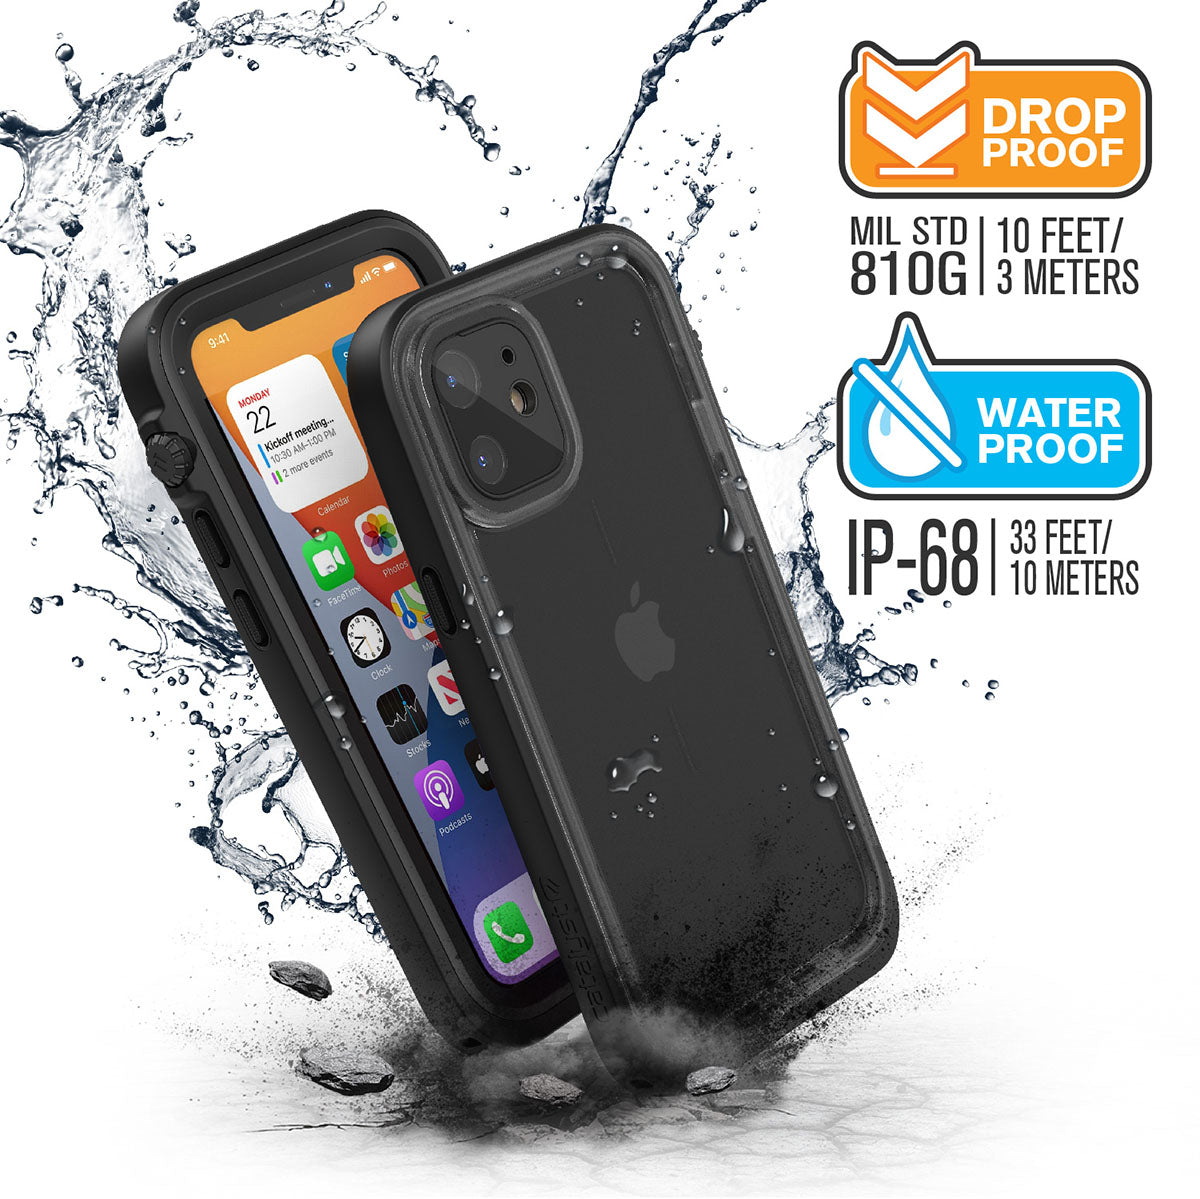 Catalyst iPhone 12 waterproof case total protection drop proof water proof Text reads MIL STD 810G 10 feet-3 meters Water proof IP-68 33/feet 10 meters